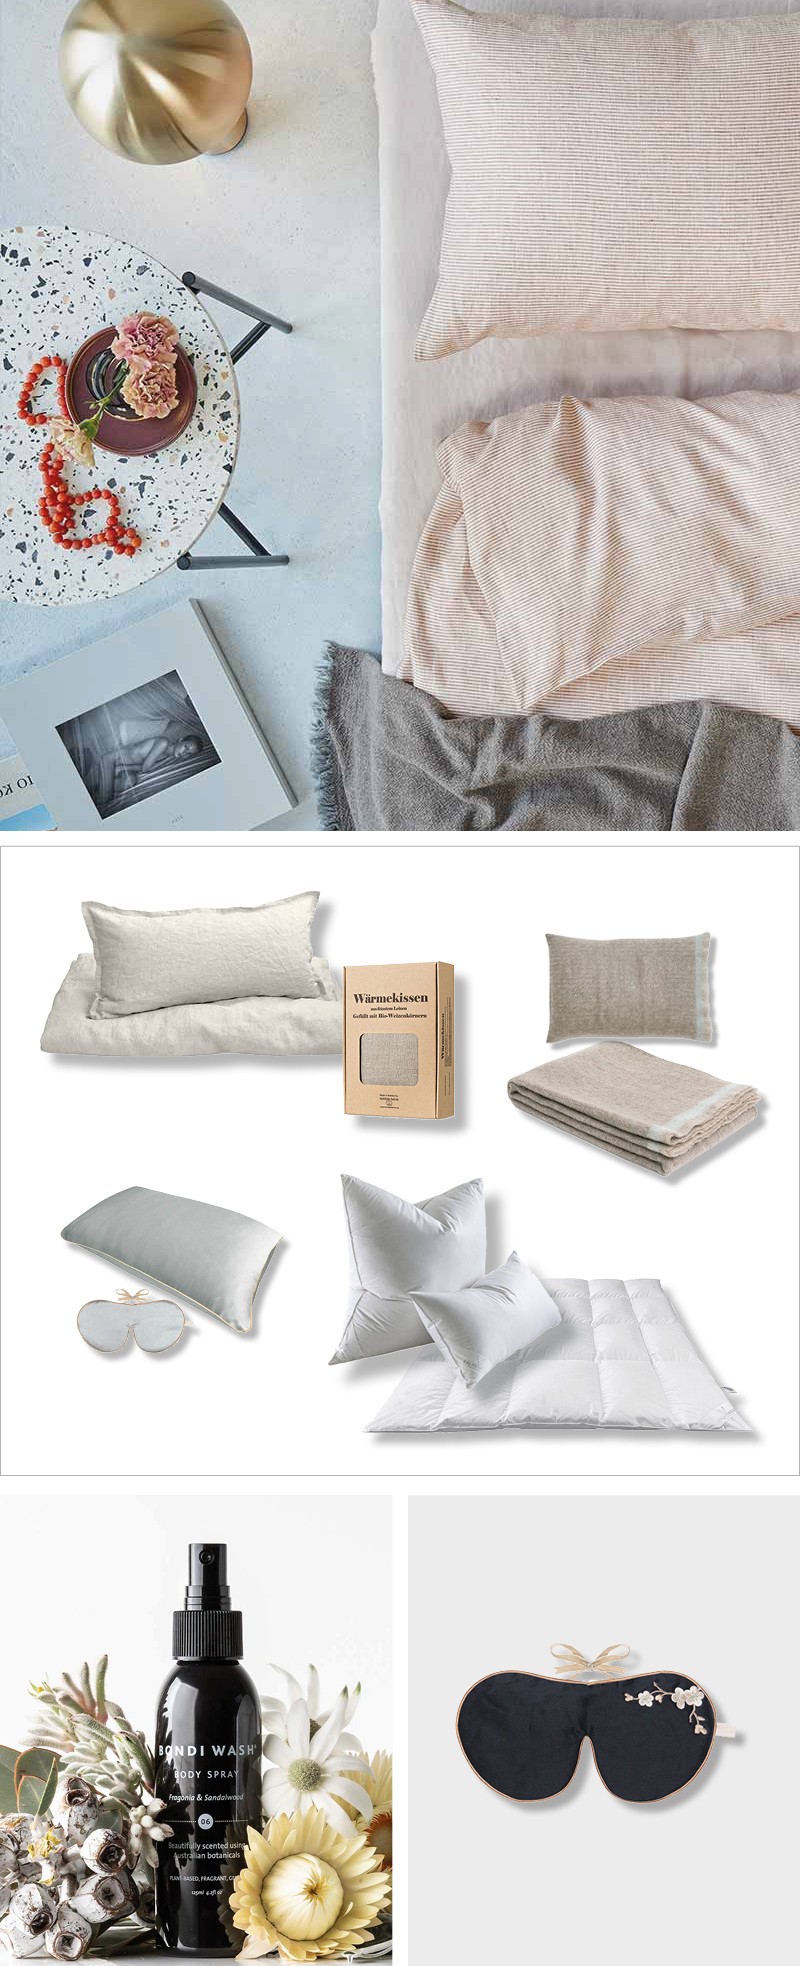 Collage aus Bildern und geeigneten Produkten aus dem RAUM Concept store zu dem Thema Schlaf